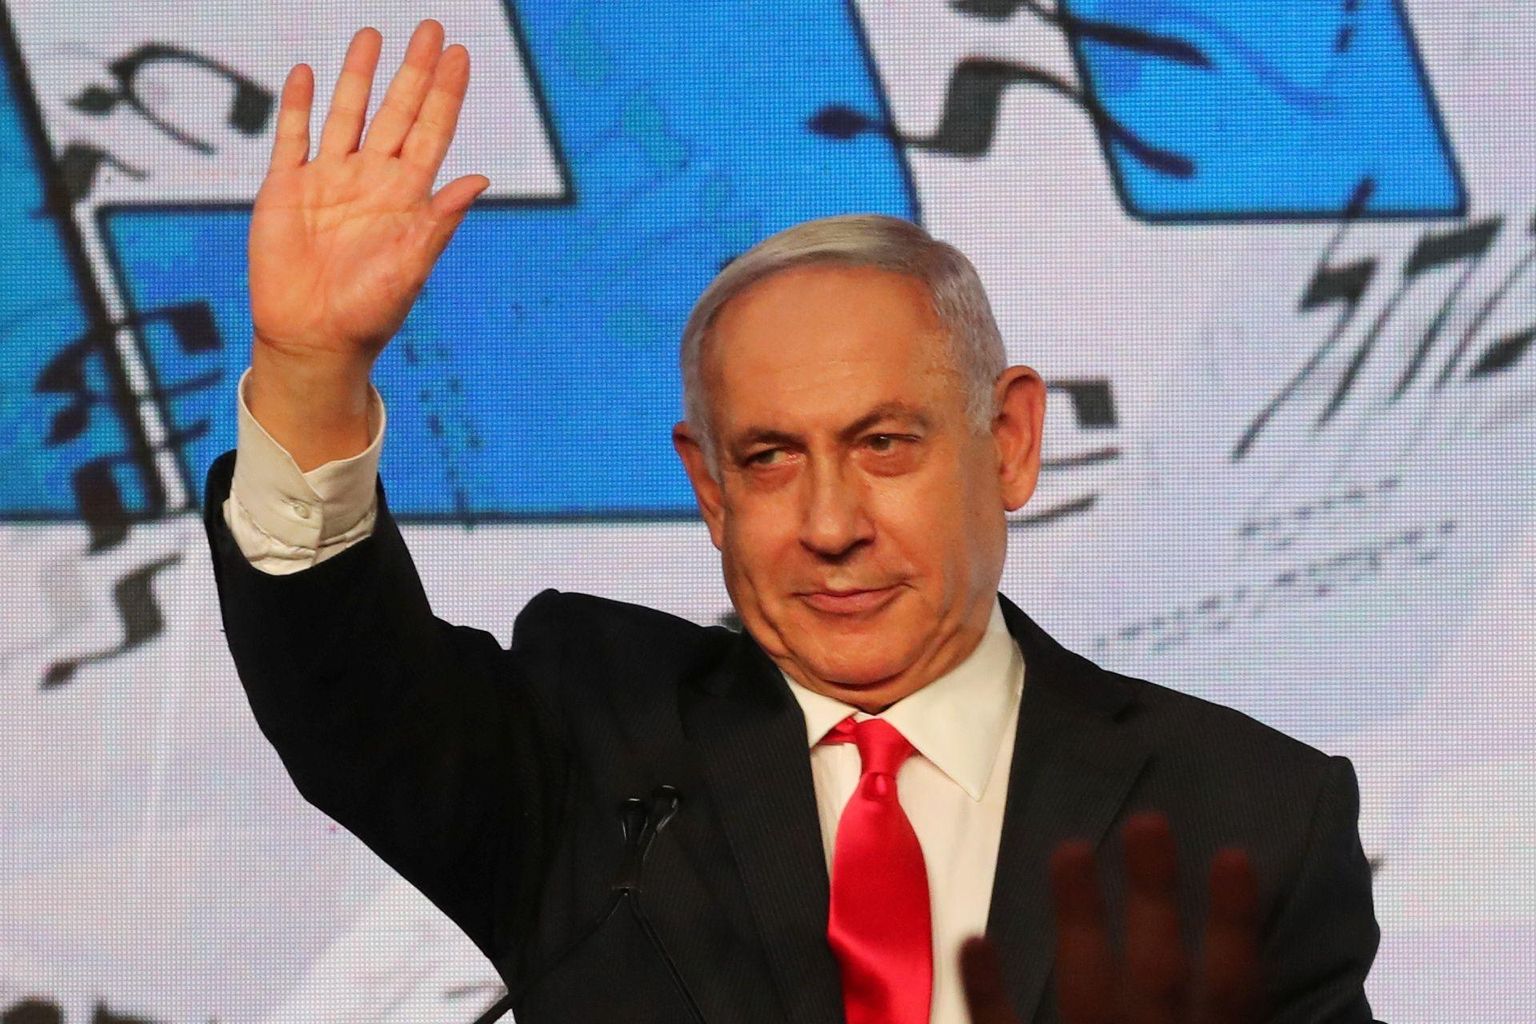 Peaminister Benjamin Netanyahu saabus teisipäeva öösel võidukalt valimispeole, sest lävepakuküsitlused näitasid paremtiiva erakondadele võitu. Hommikuks oli ta edu ära sulanud, kuna islamistlik erakond Ra’am ületas künnise ja nabis Netanyahult võidu. 